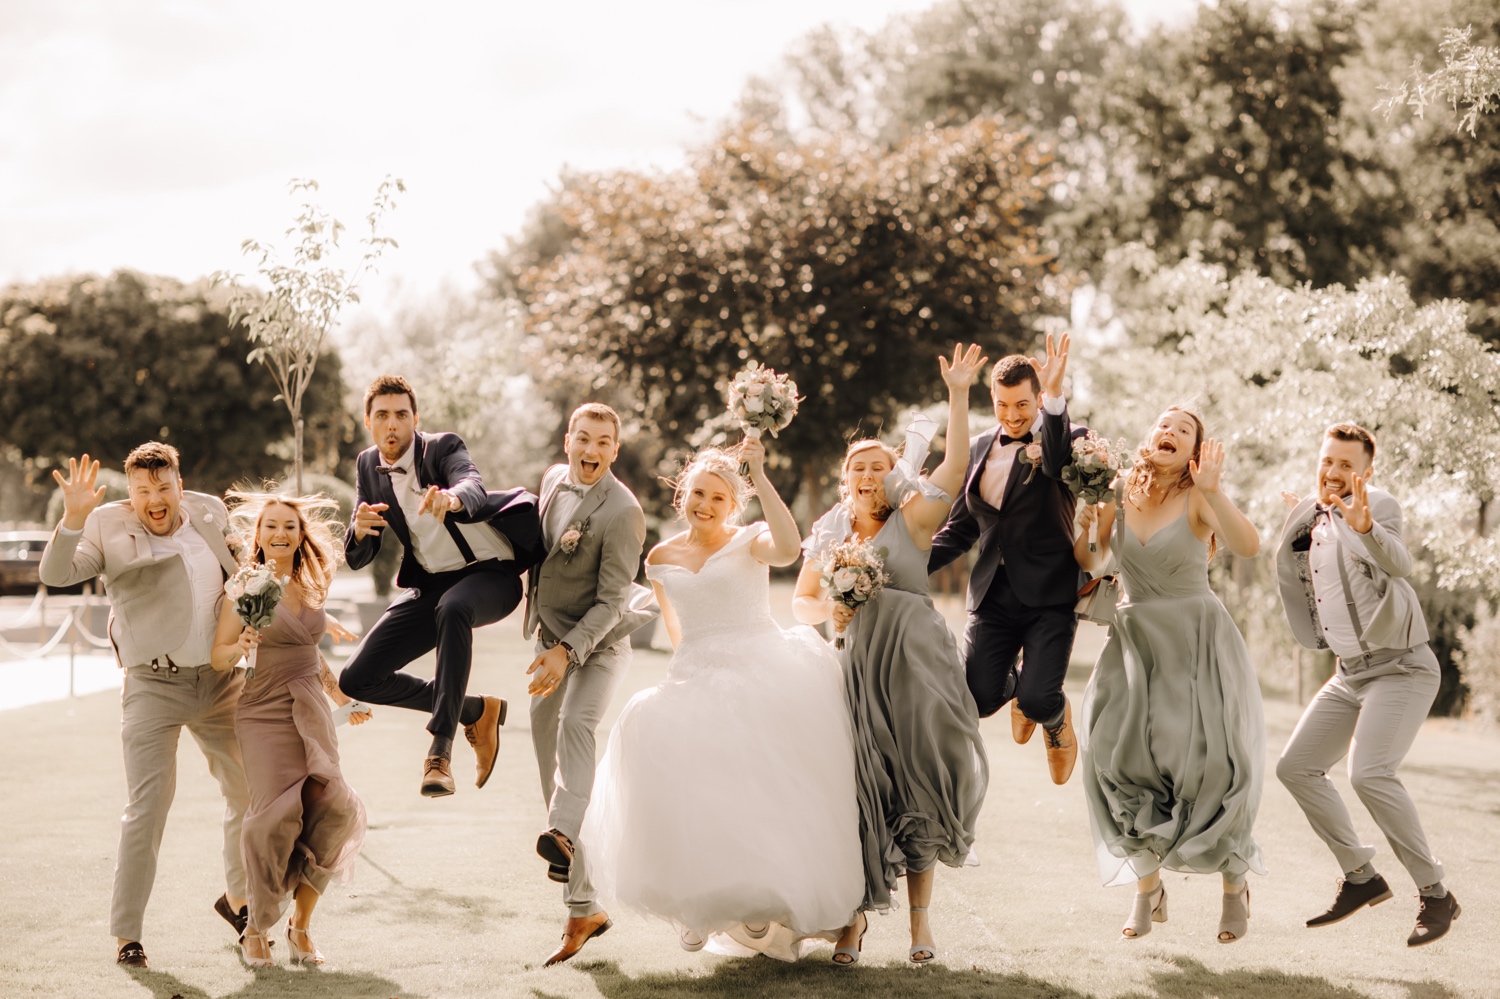 Huwelijksfotograaf Limburg - bruidspaar en vrienden springen in de lucht voor groepsfoto